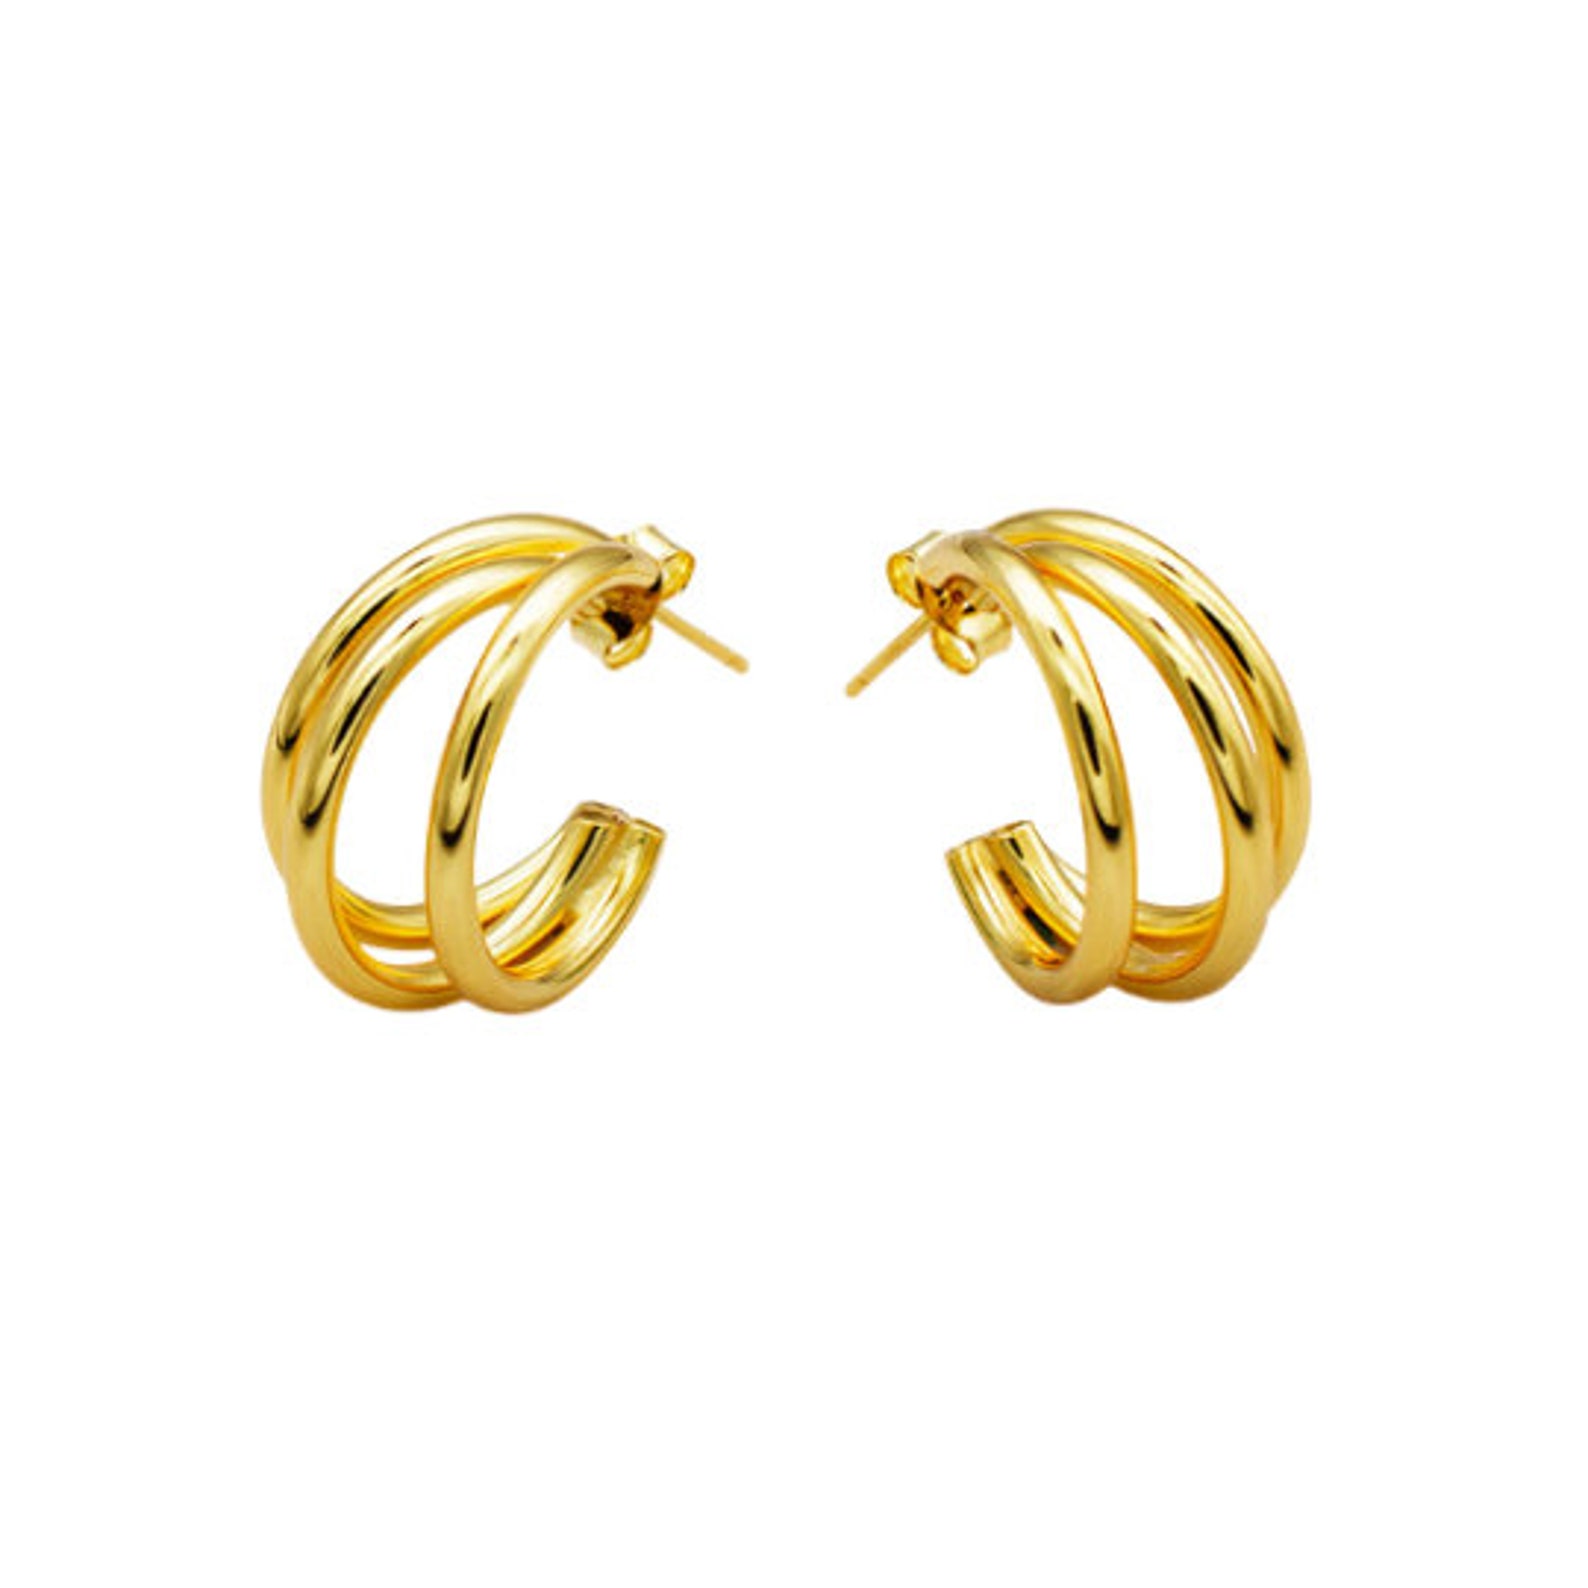 Aesthetic Three Hoop Earrings Gold/Silver Hoop Earrings Gift | Etsy